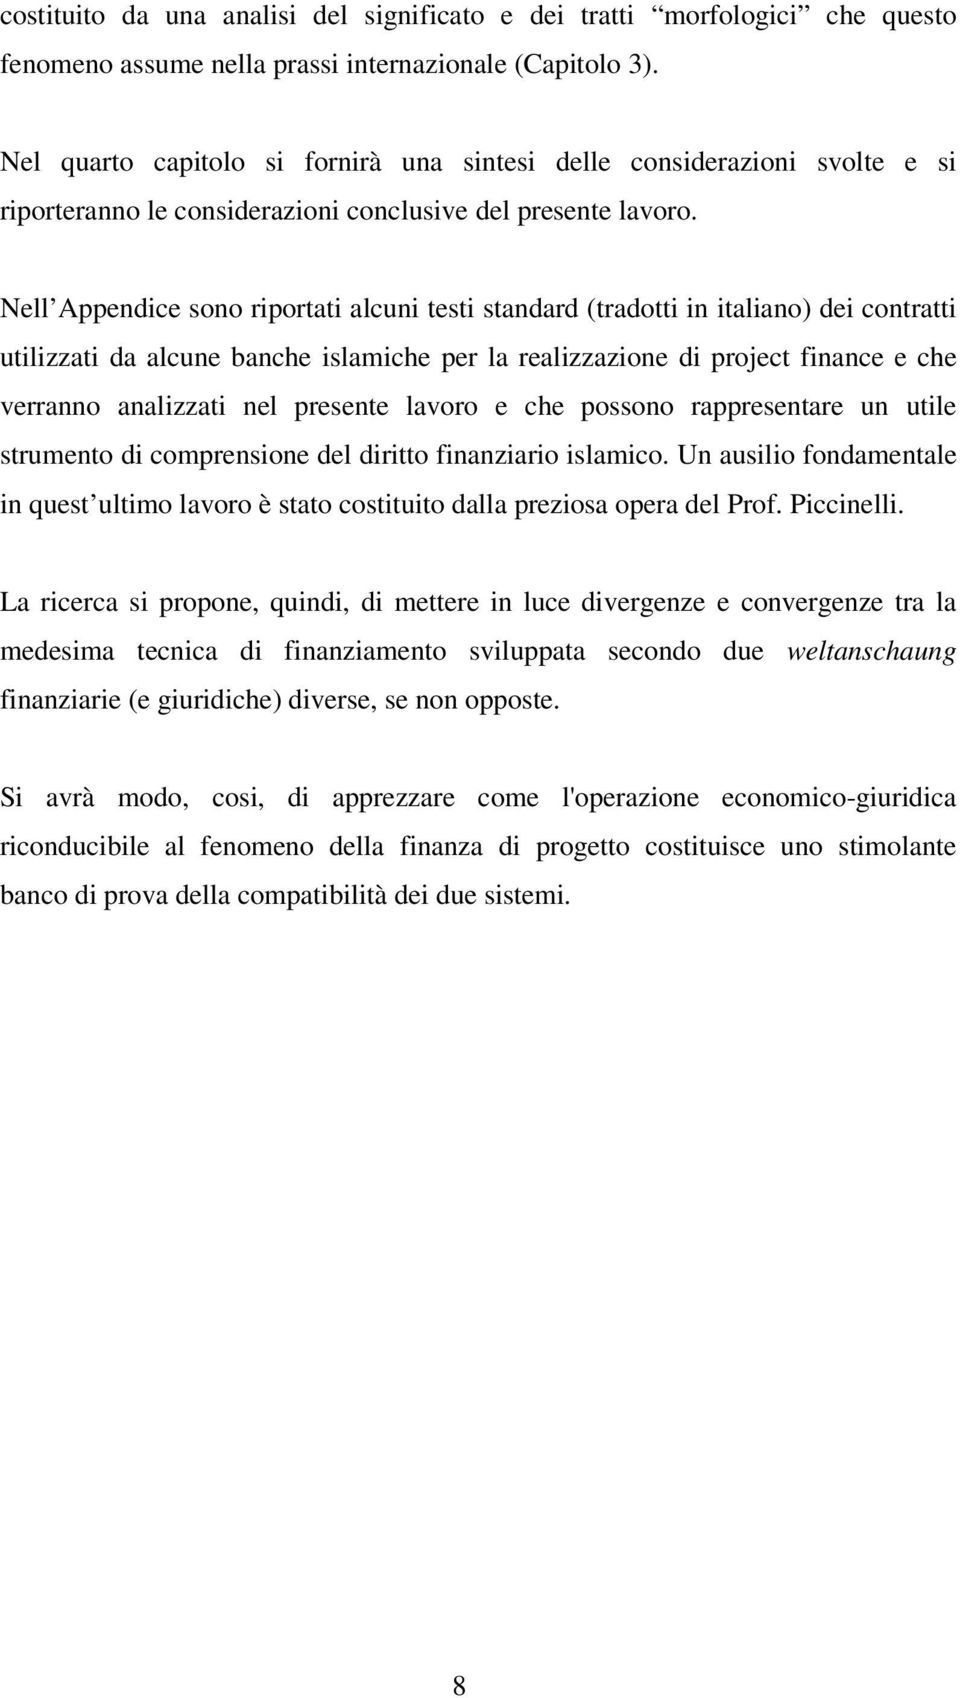 Nell Appendice sono riportati alcuni testi standard (tradotti in italiano) dei contratti utilizzati da alcune banche islamiche per la realizzazione di project finance e che verranno analizzati nel